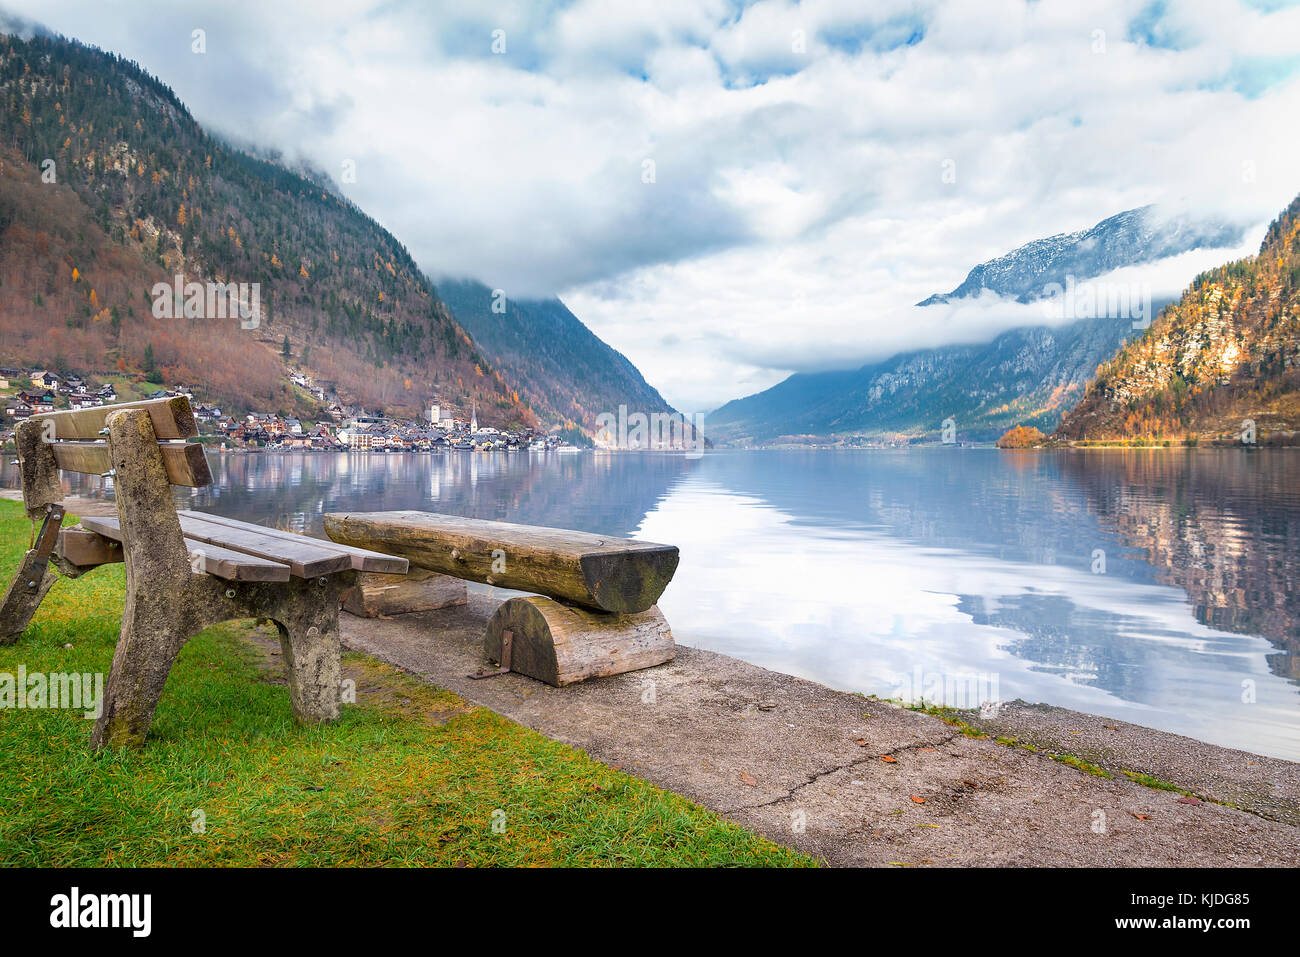 Destinazioni di viaggio Tema immagine con le montagne del Dachstein riflessi nell'acqua del lago hallstatter e panchine di legno sulla sua riva. Foto Stock